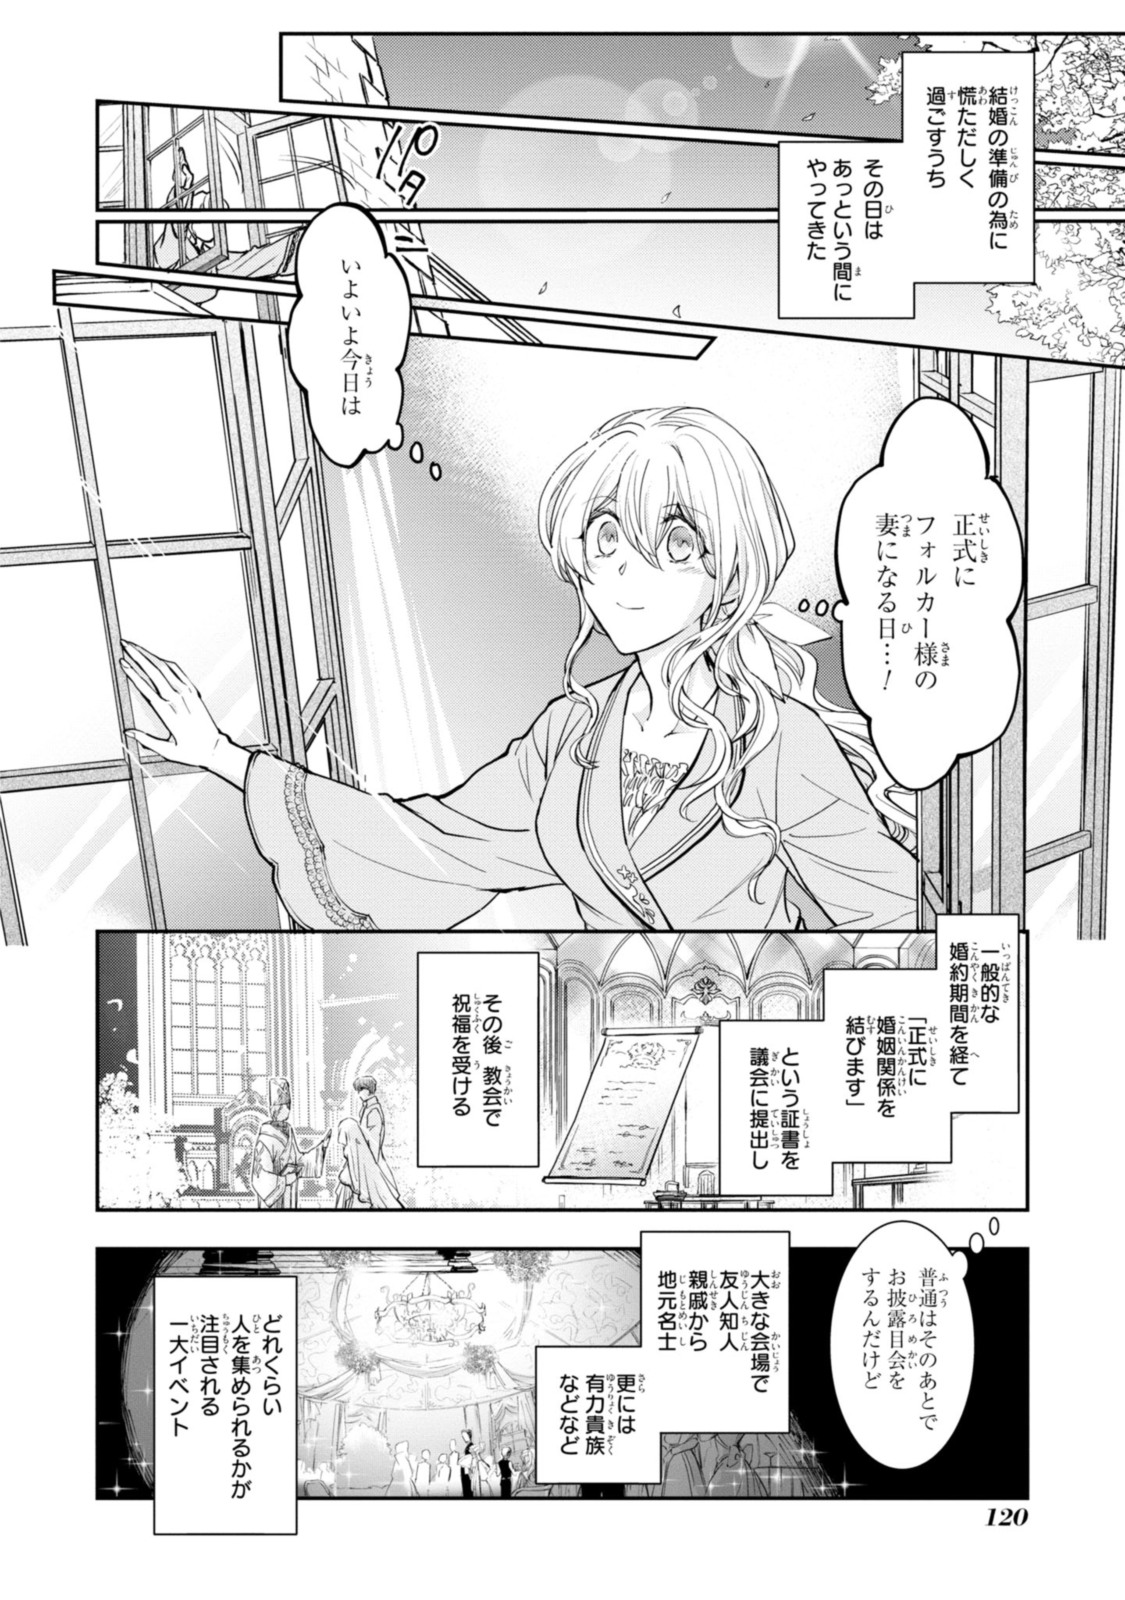 Sakkon no Cinderella wa Kutsu wo Otosanai. - Chapter 9.2 - Page 2